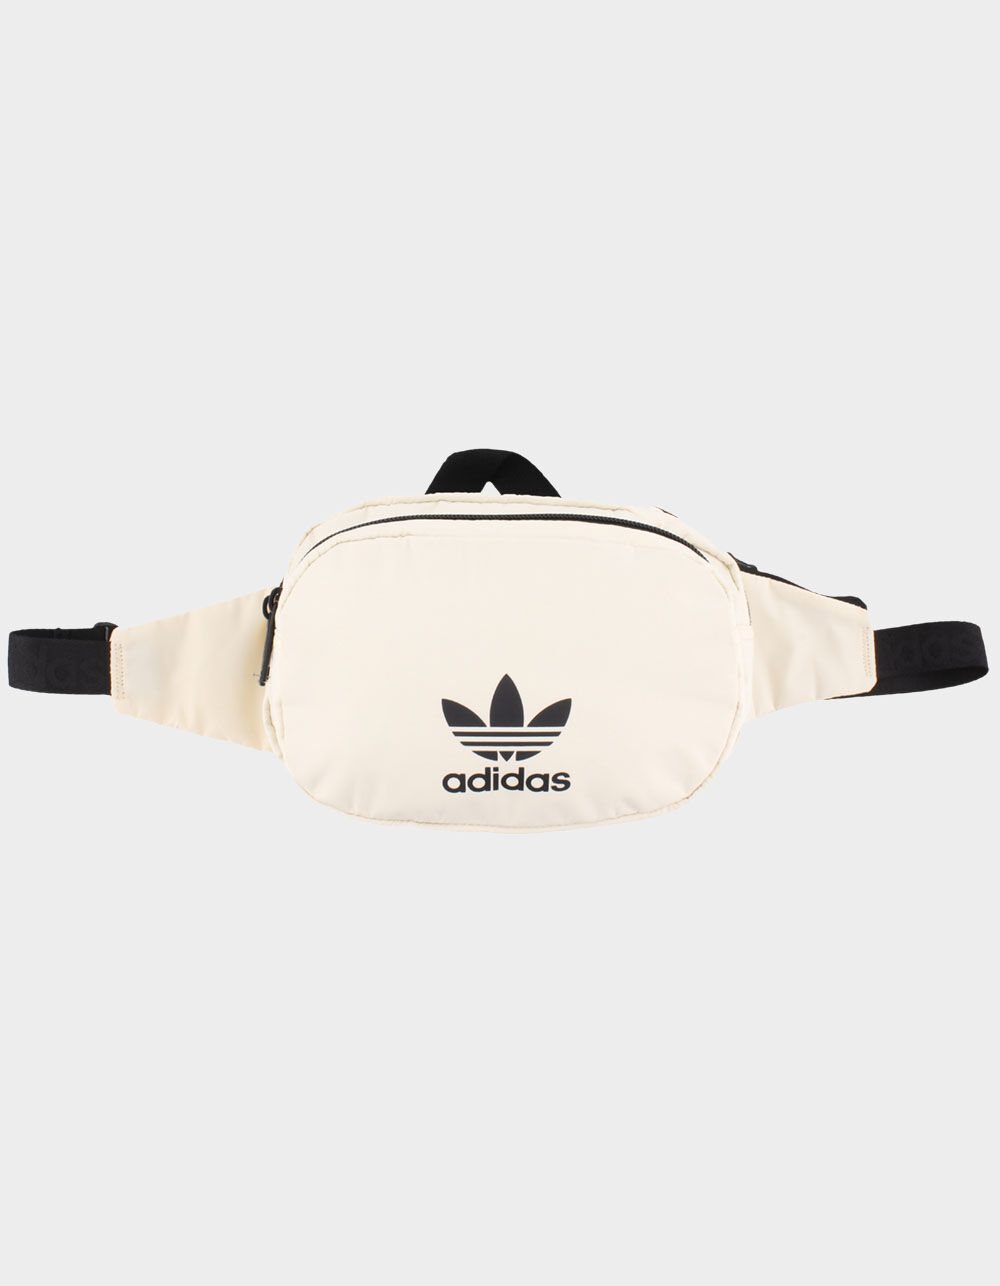 Adidas Originals Sport Waist Pack - White - One Size